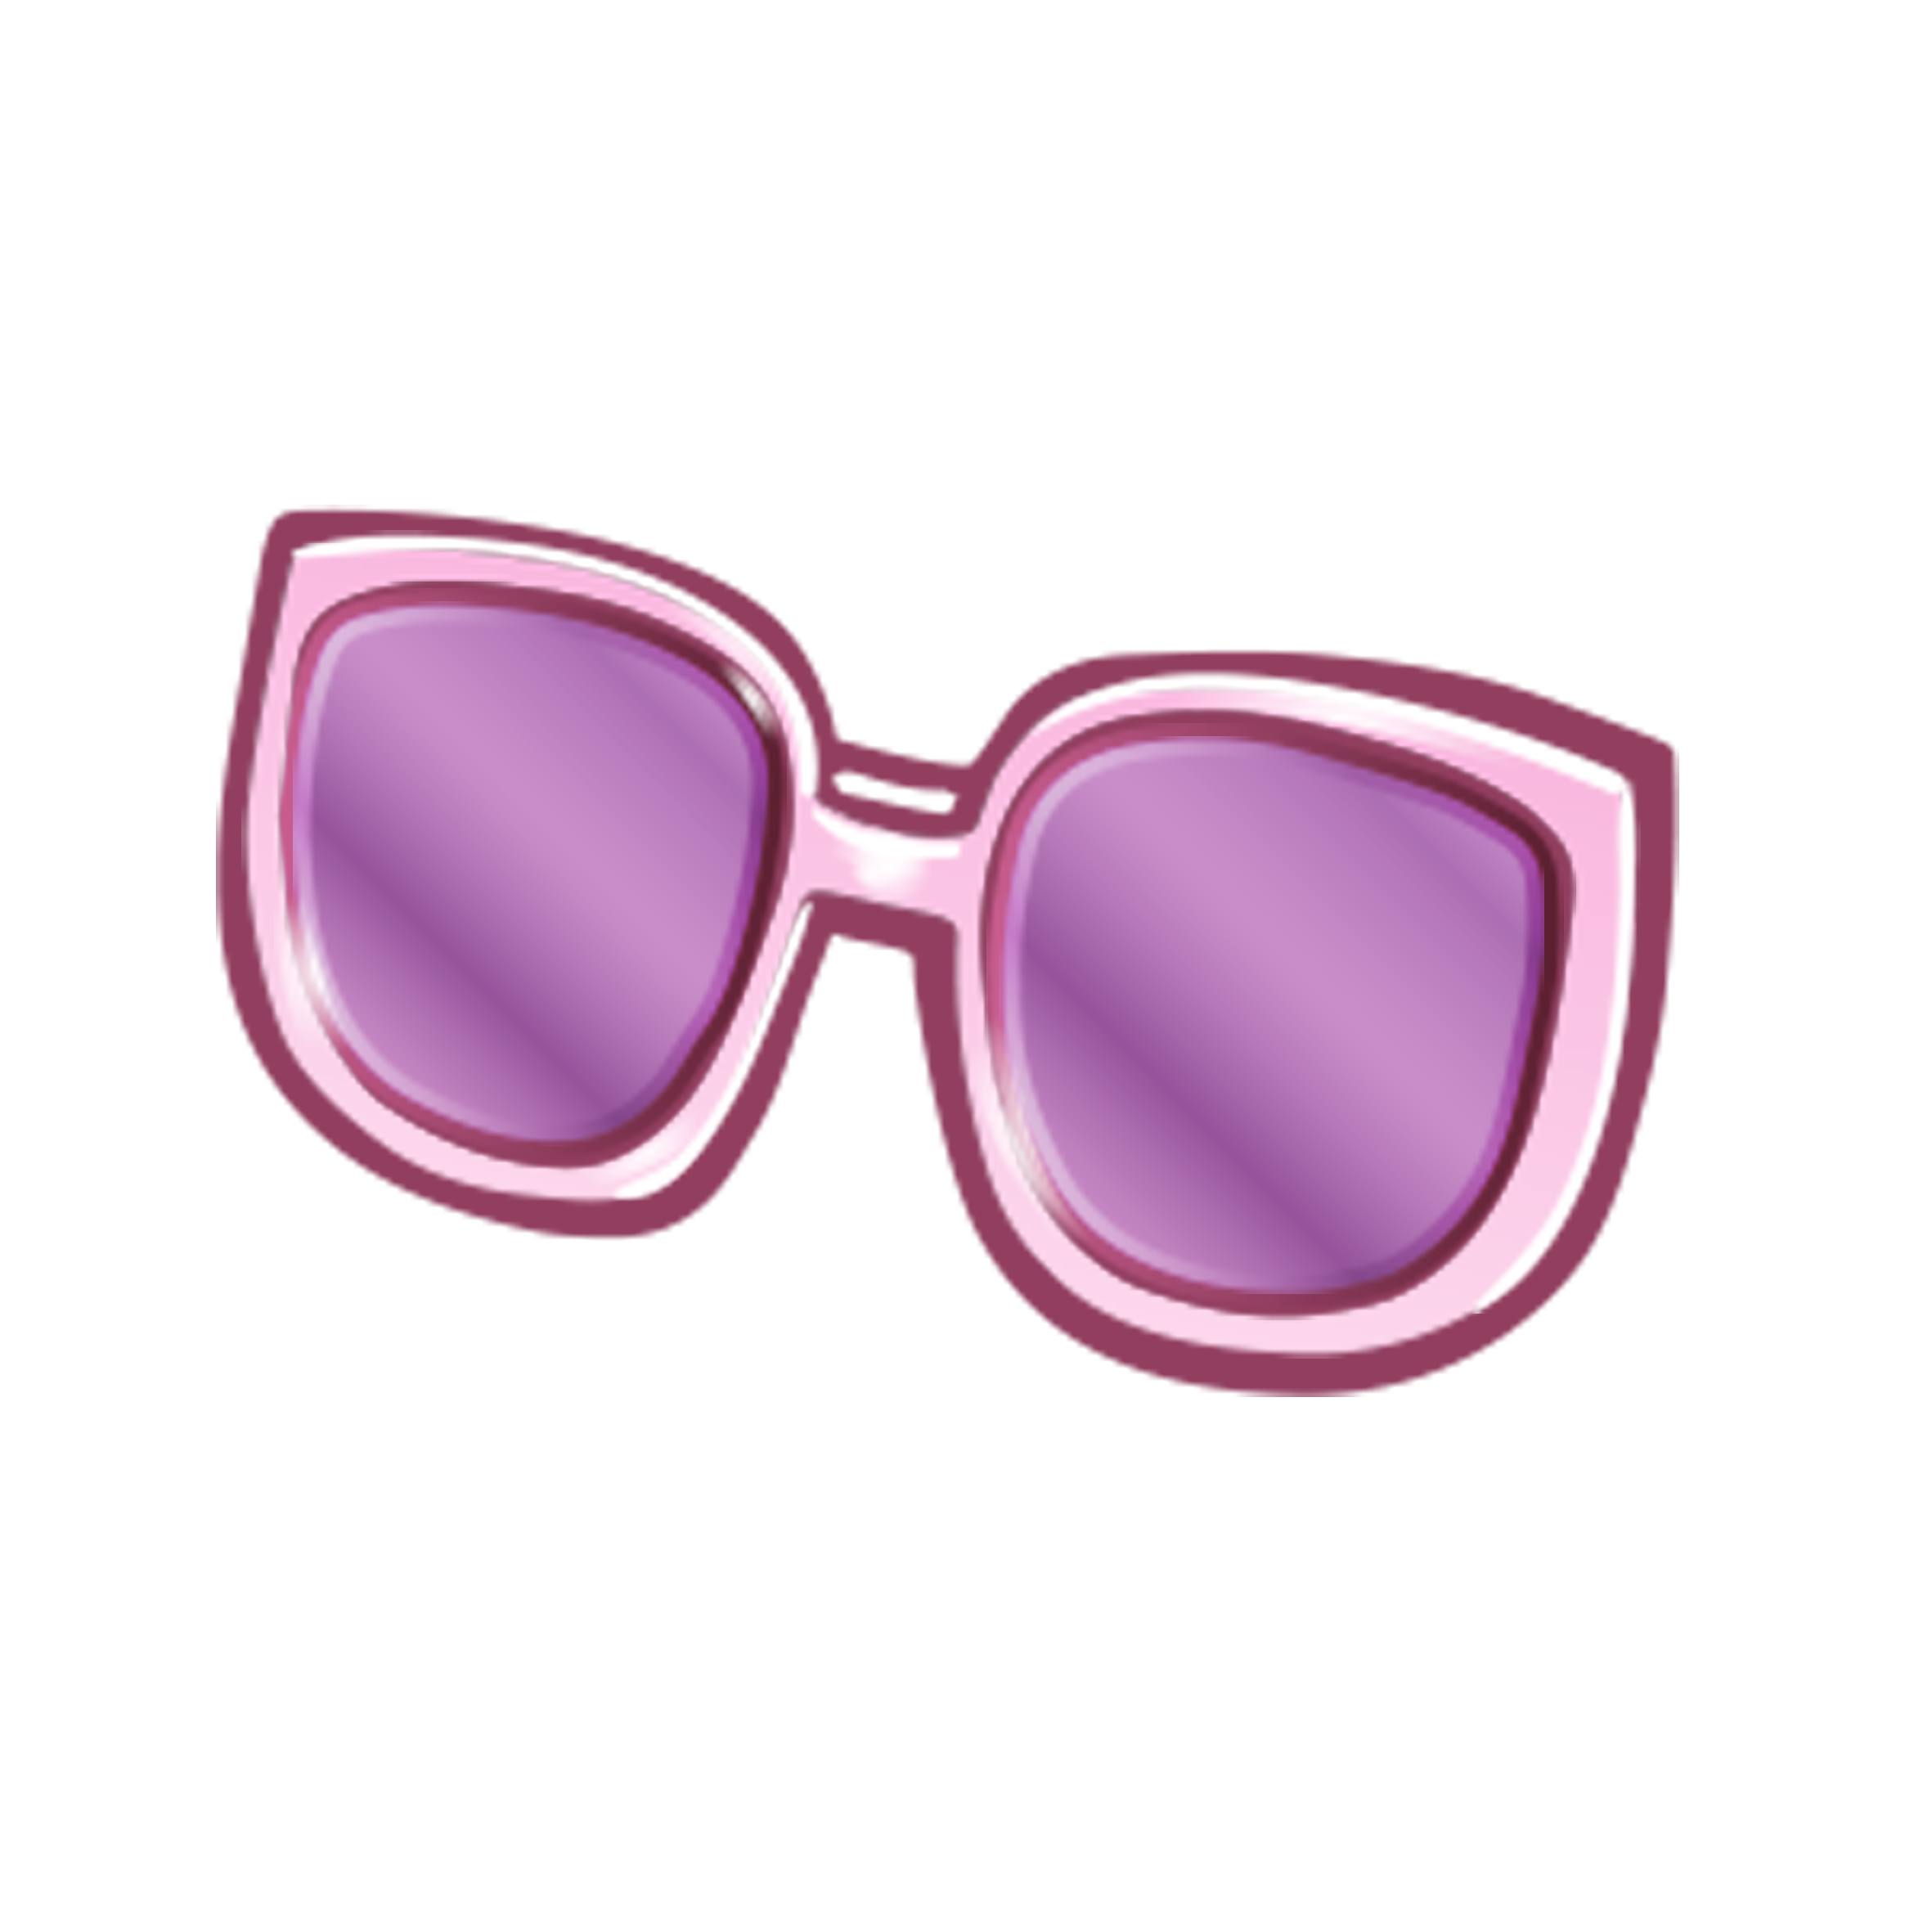 Sunglasses Icon Free HQ Image Clipart